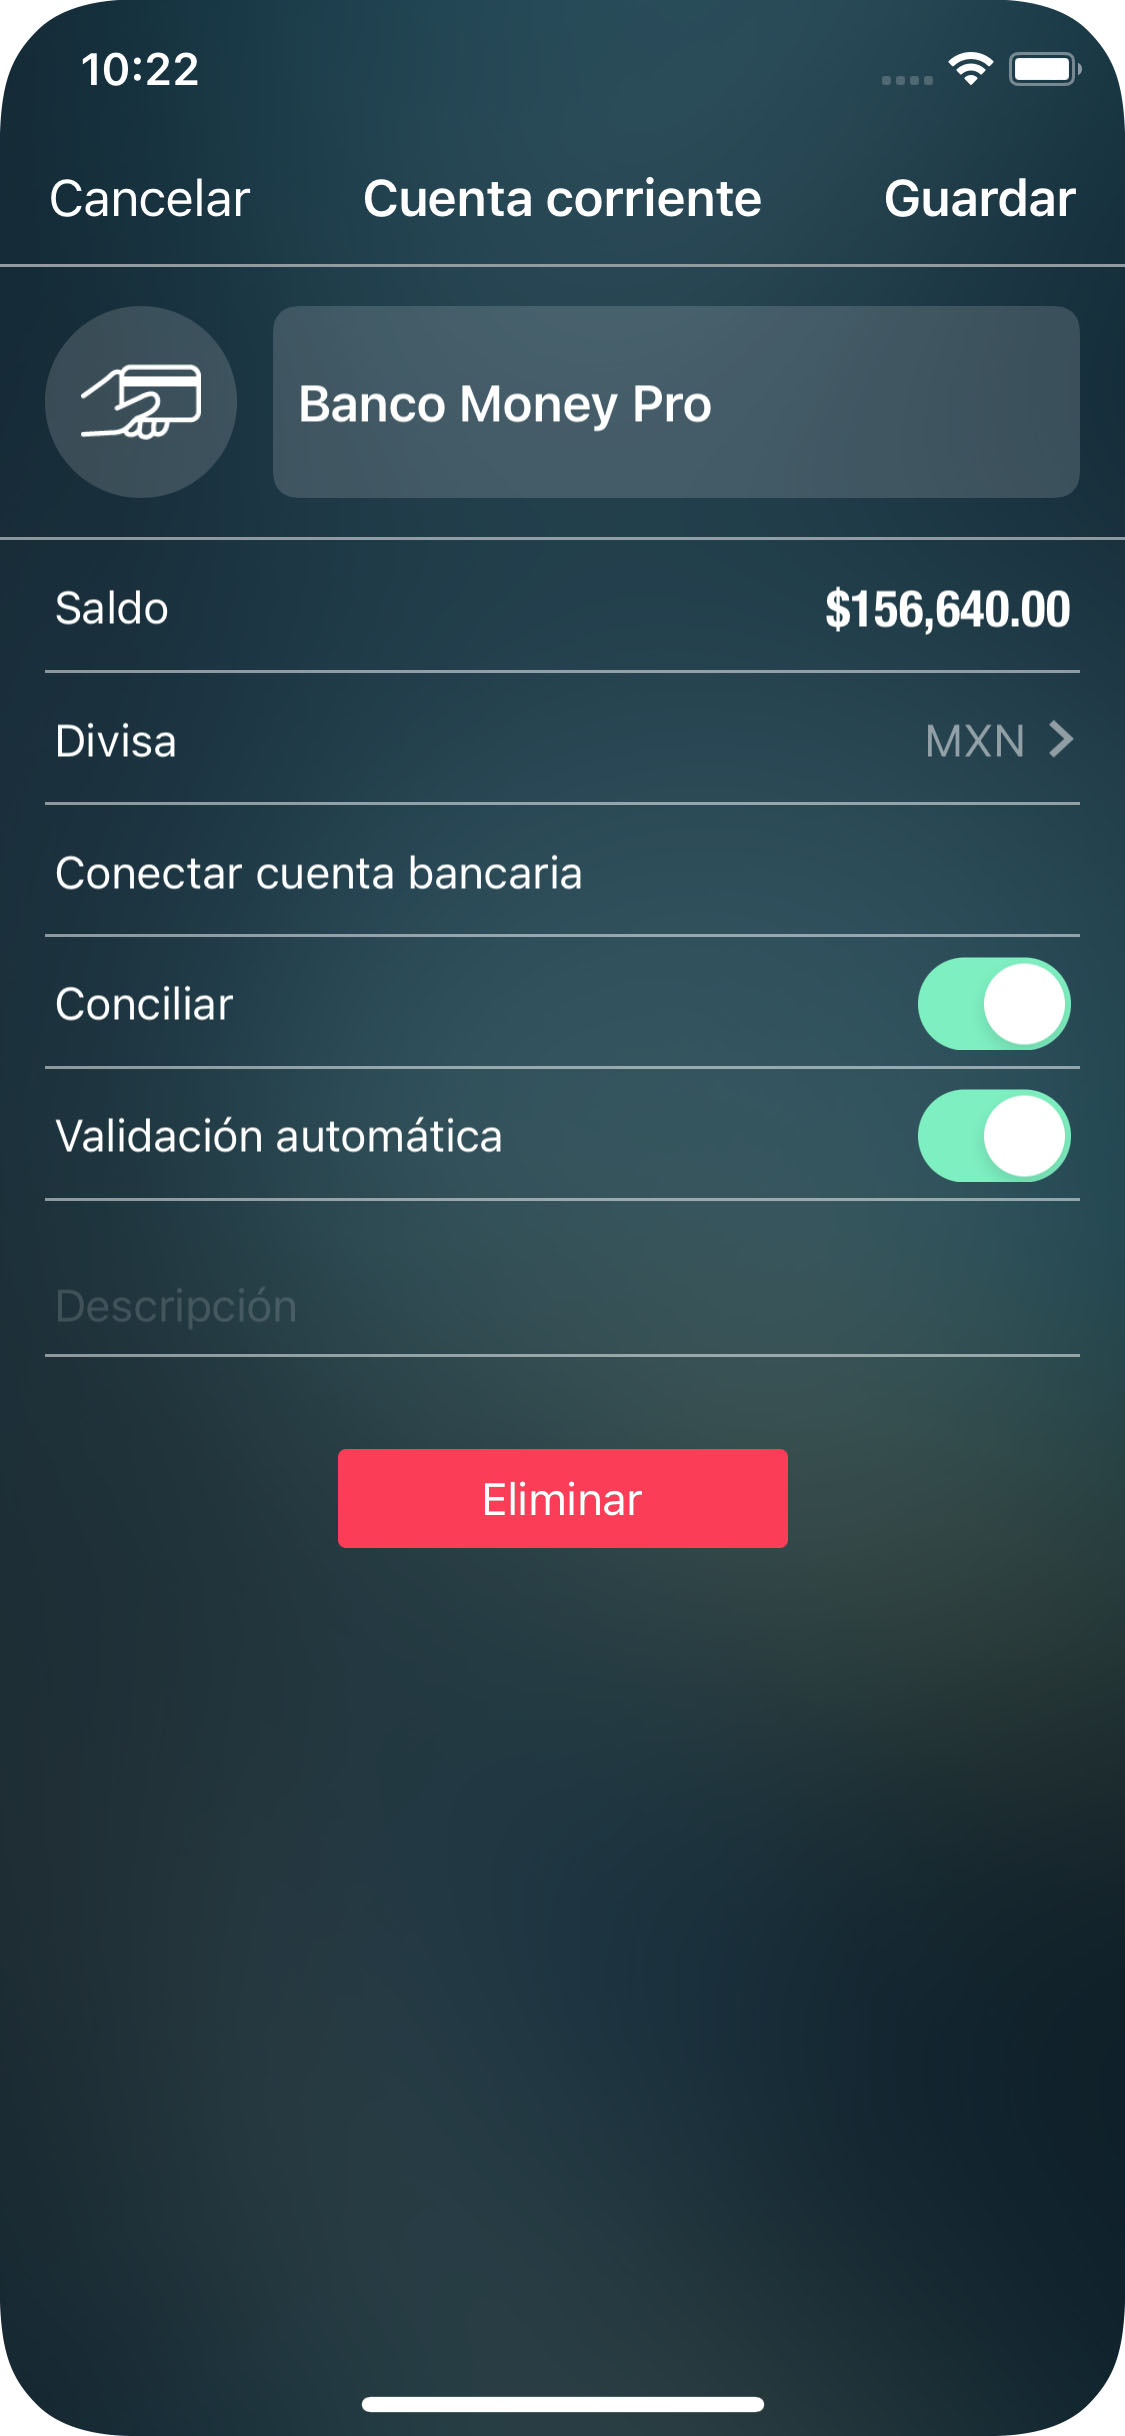 Money Pro - Cuentas (Saldo) - Datos - iPhone